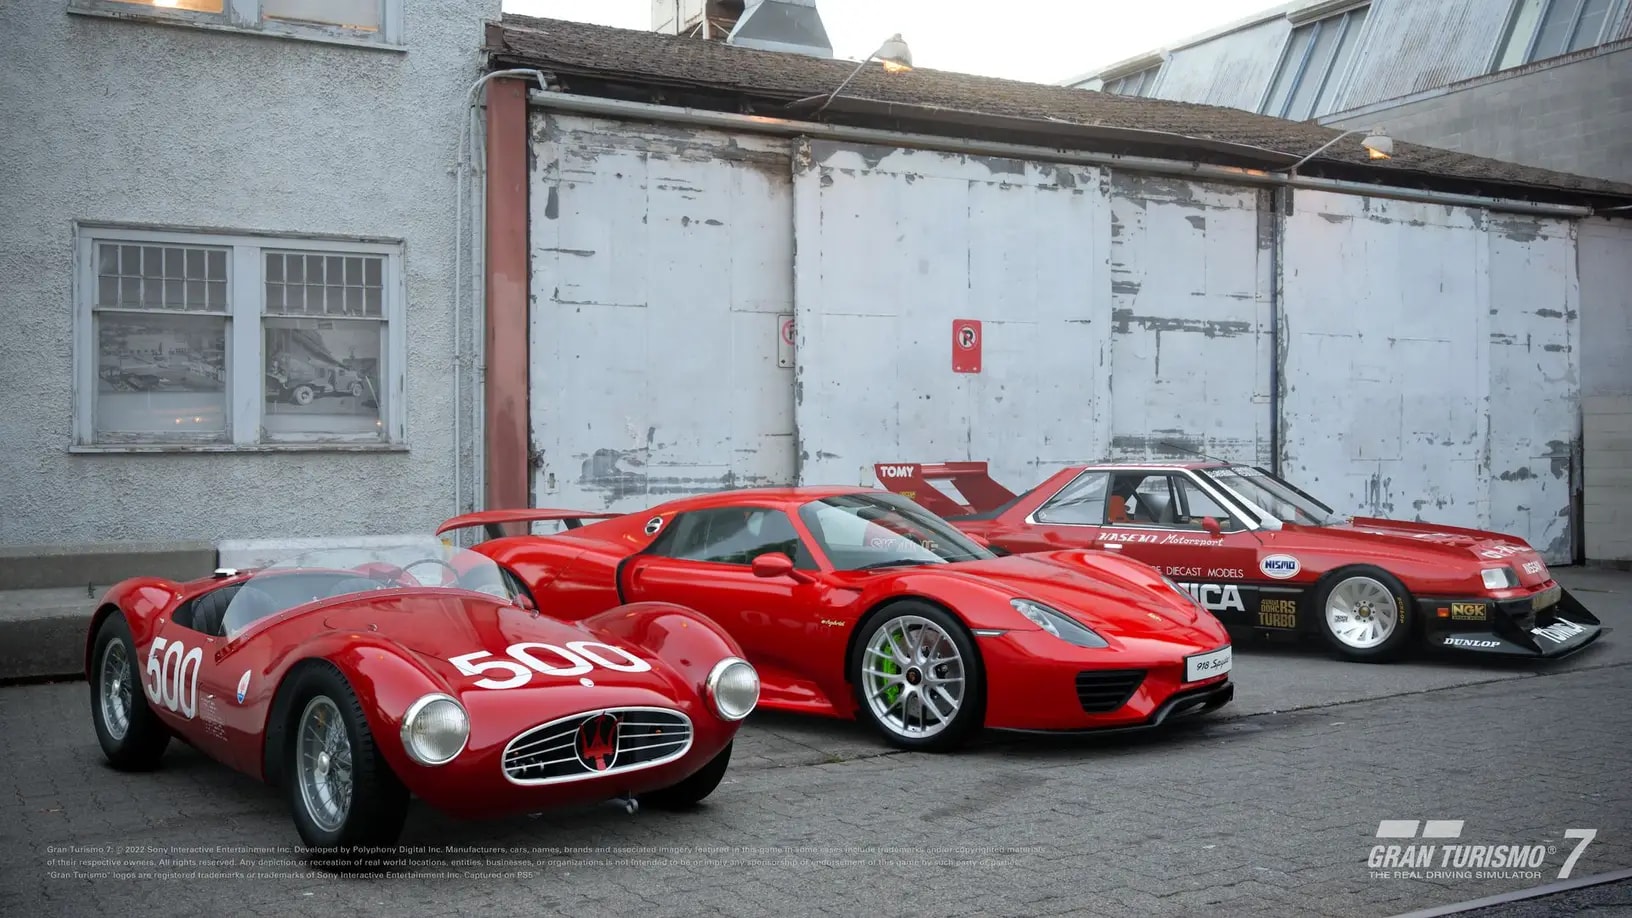 Gran Turismo 7 Brings Maserati, Porsche and Nissan Sports Cars in